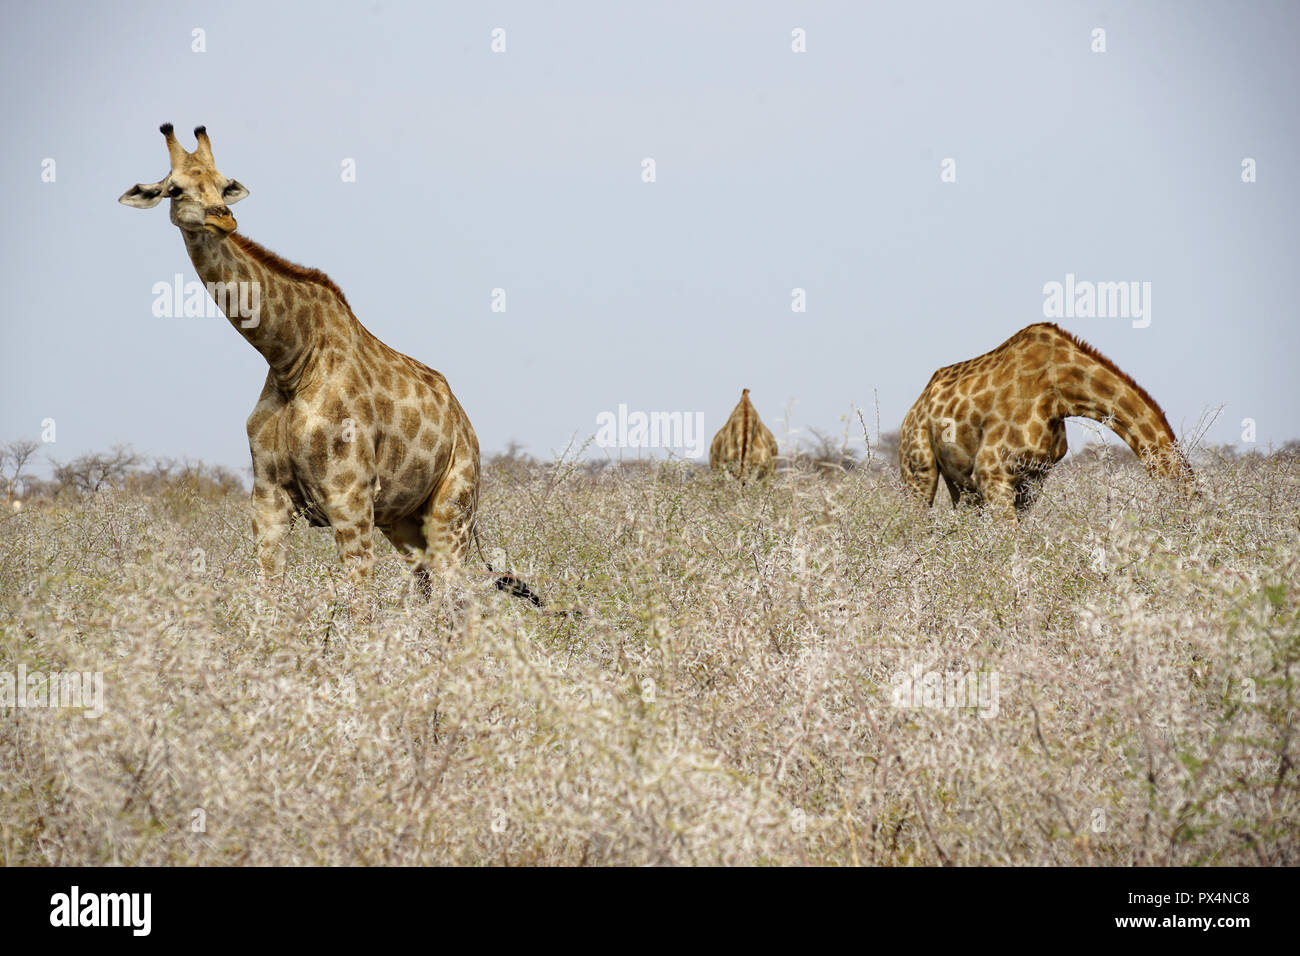 Giraffen fressen an trockenen Dornbüschen, Etosha Nationalpark, Republik Namibia, Afrika Stock Photo